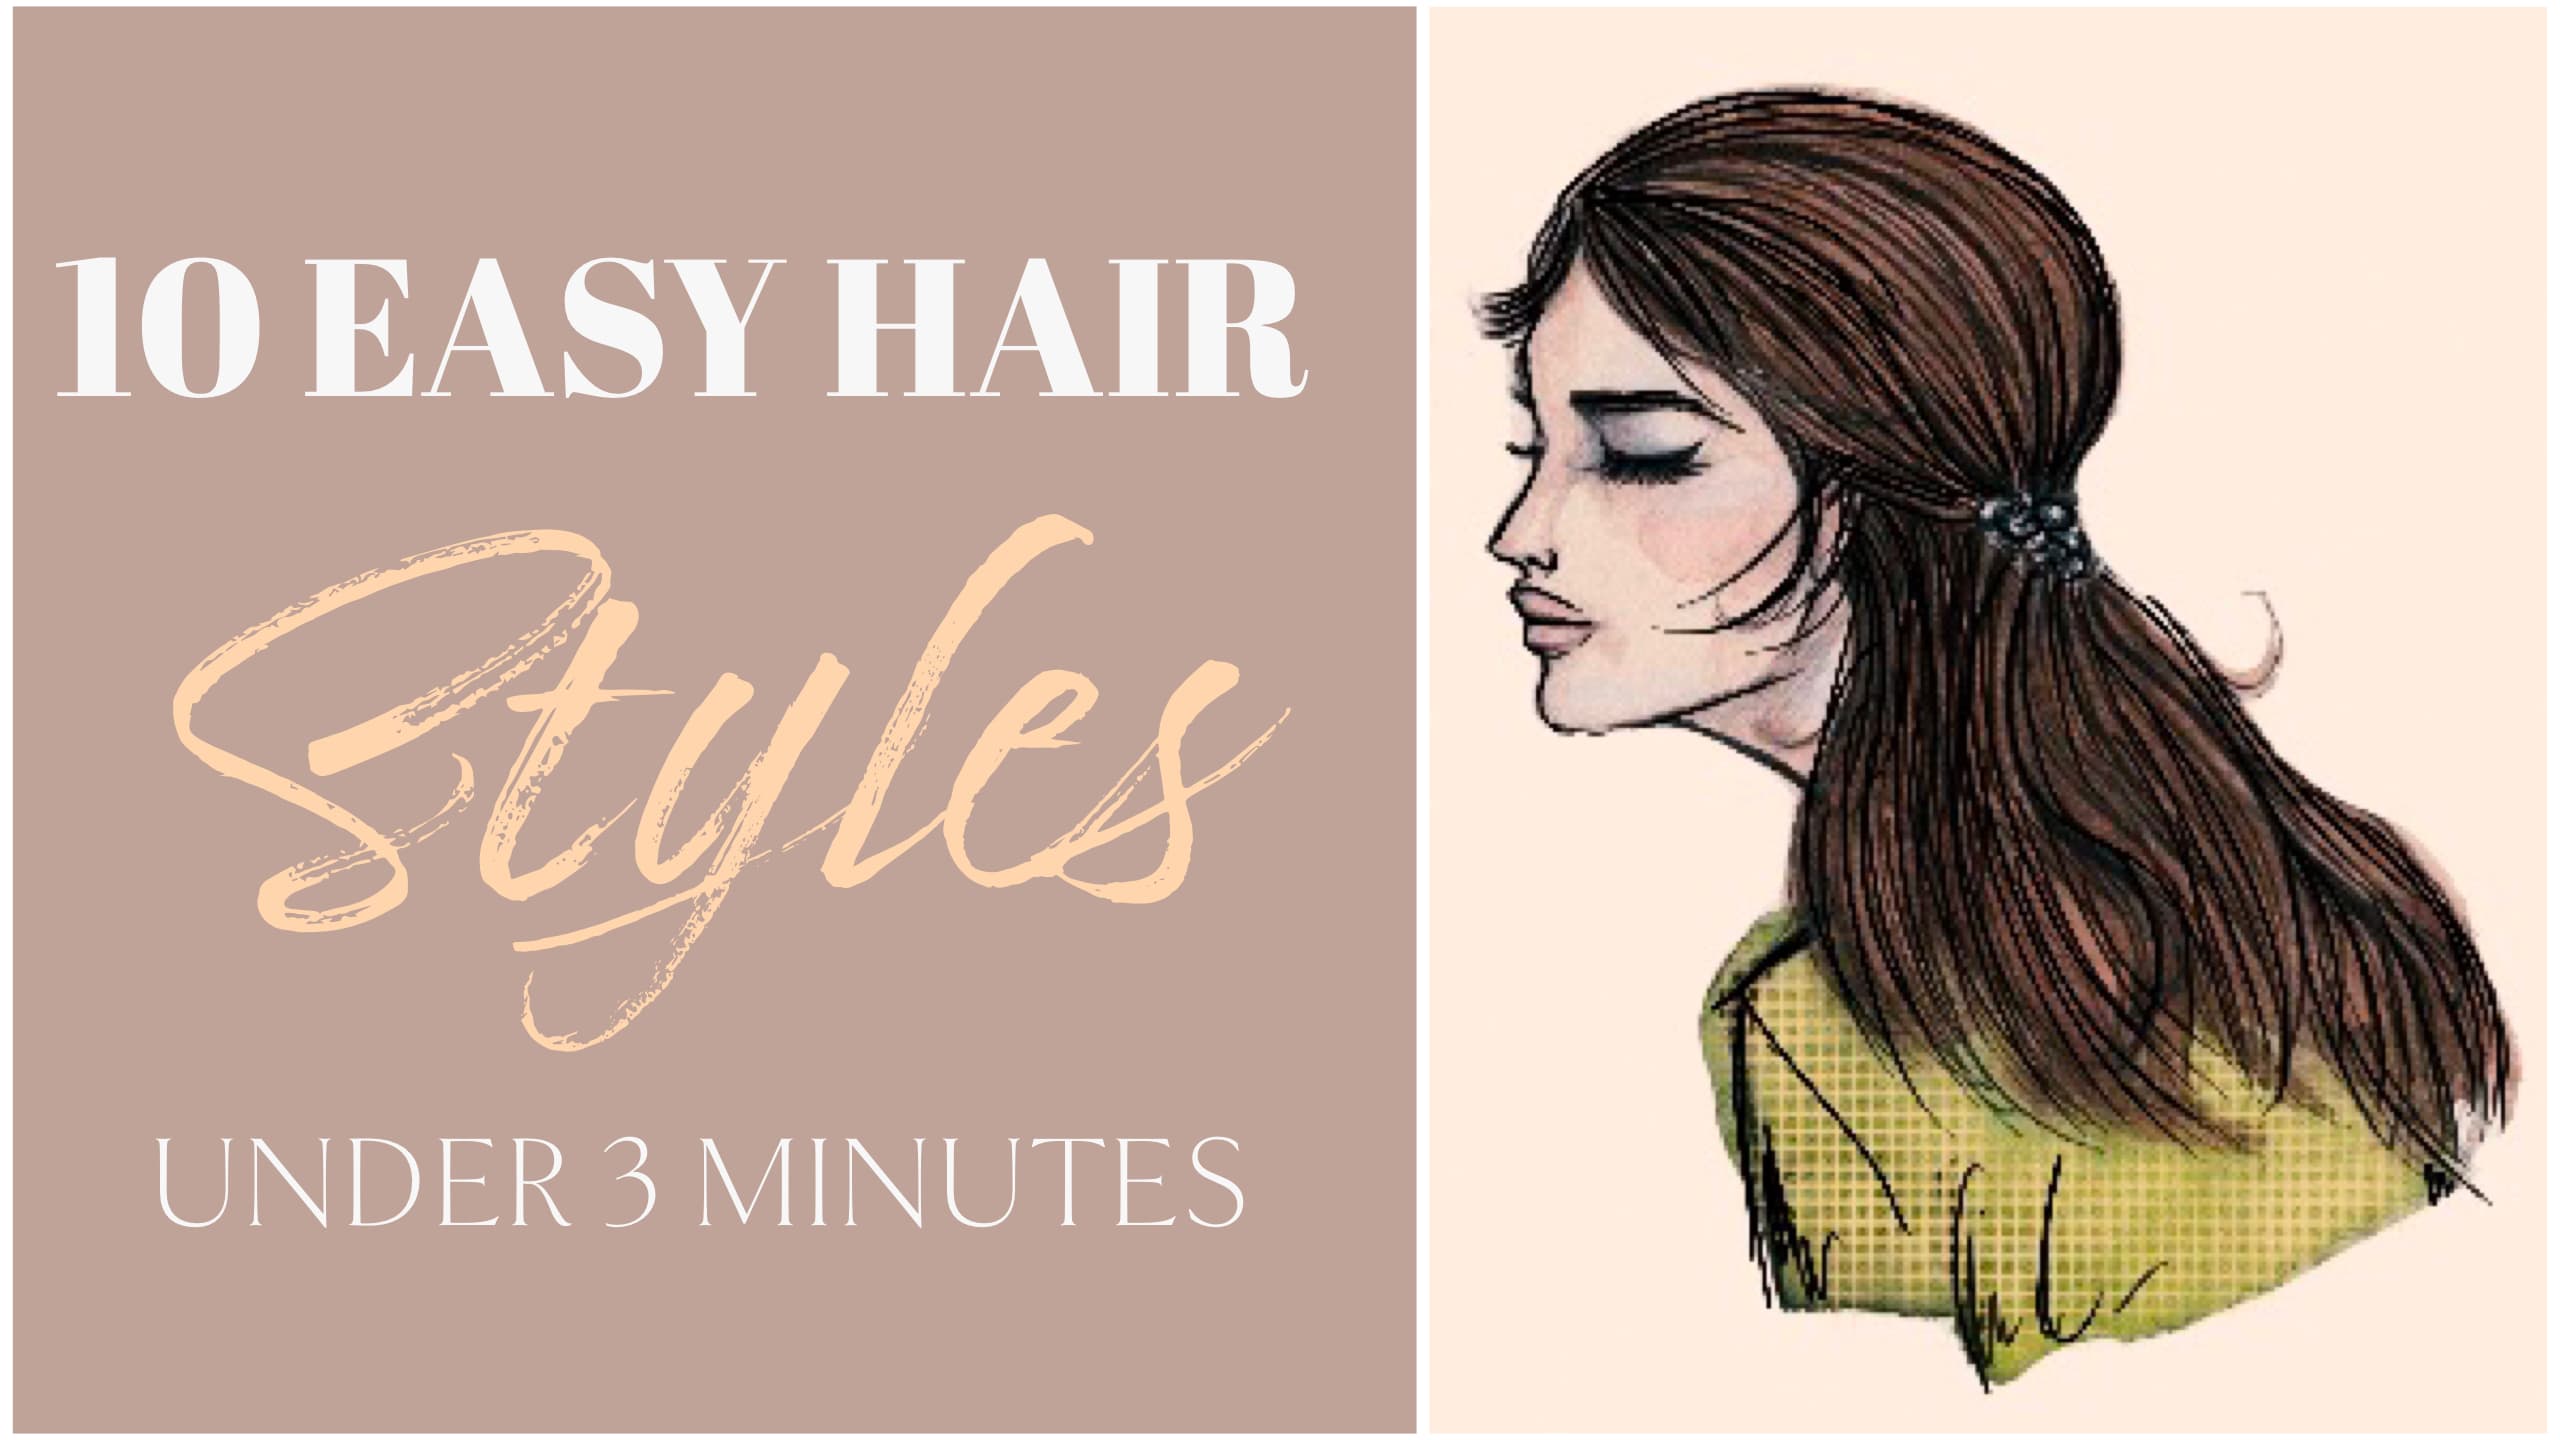 Christmas Hair for Little Girls: 3 SUPER EASY Styles - Stylish Life for Moms